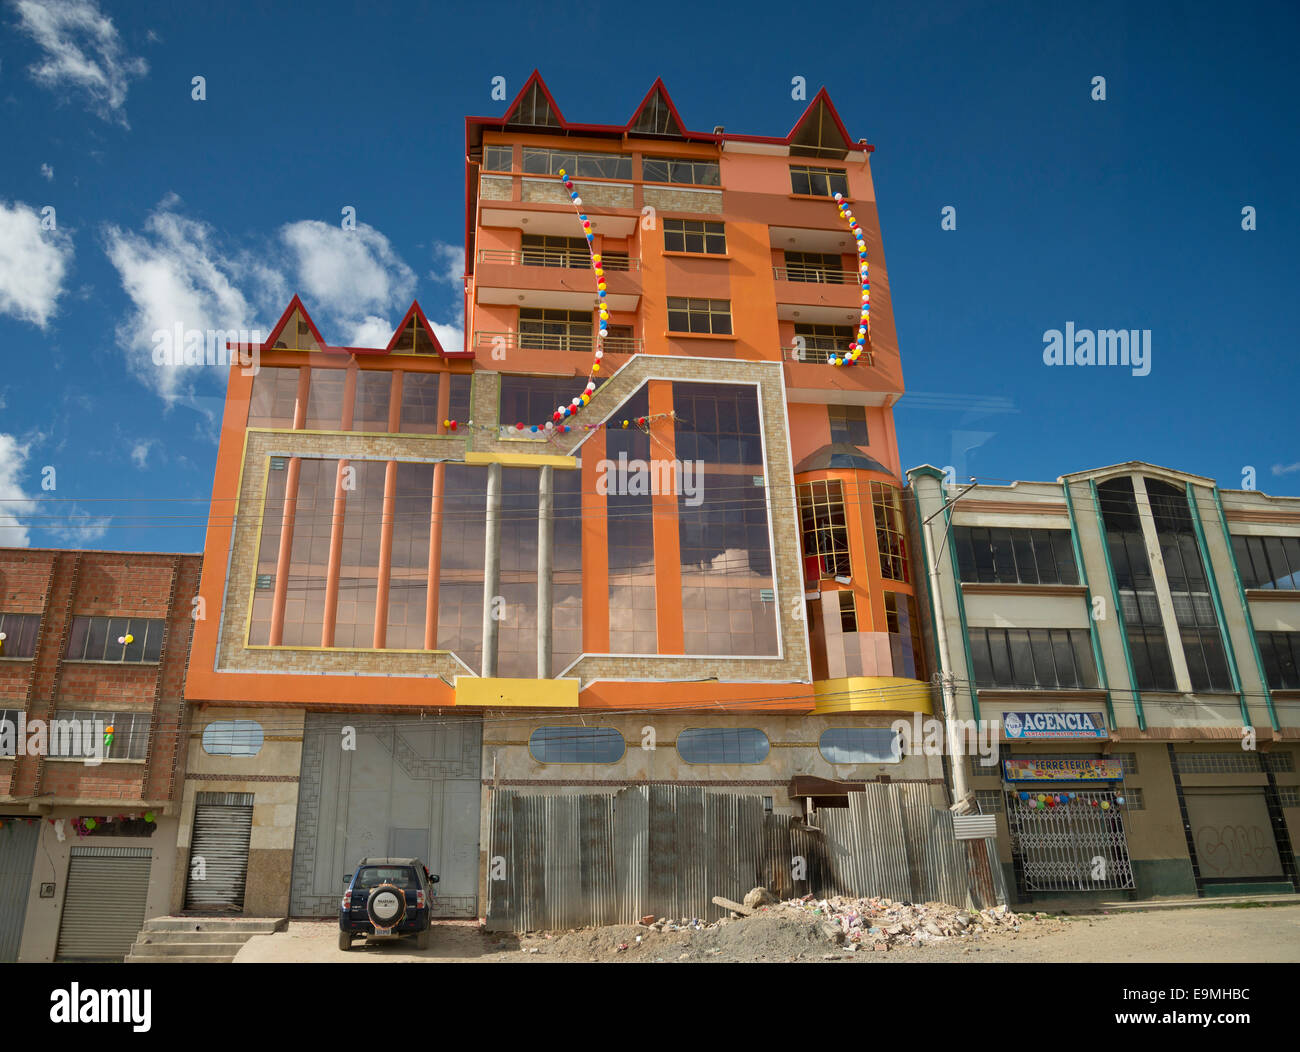 Maison familiale située dans la ville de El Alto près de La Paz, Bolivie Banque D'Images